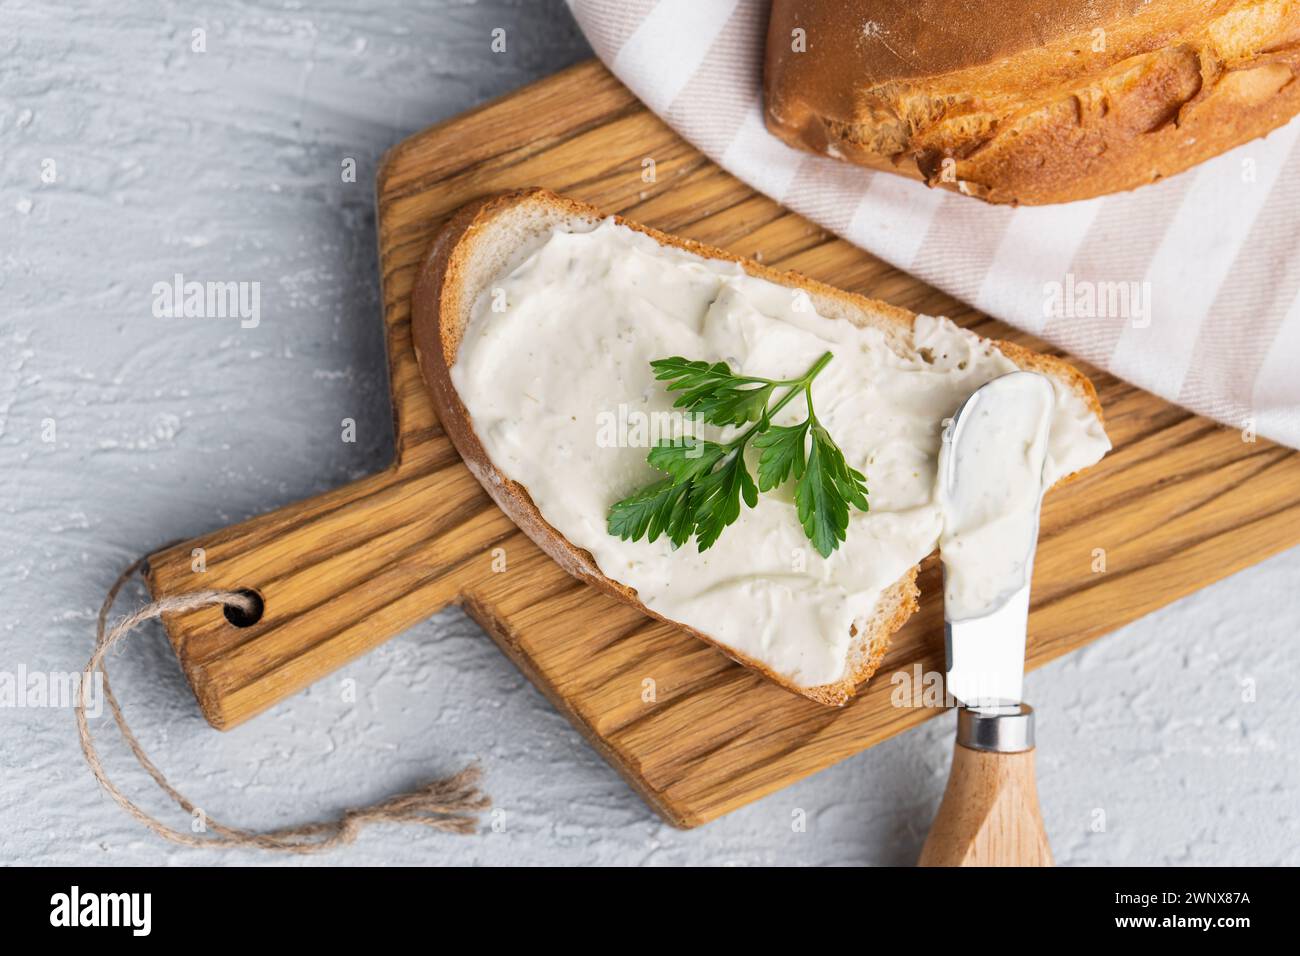 Formaggio cremoso con erbe aromatiche e condimento su fetta di pane fresco di segale croccante con coltello per formaggio nelle vicinanze Foto Stock